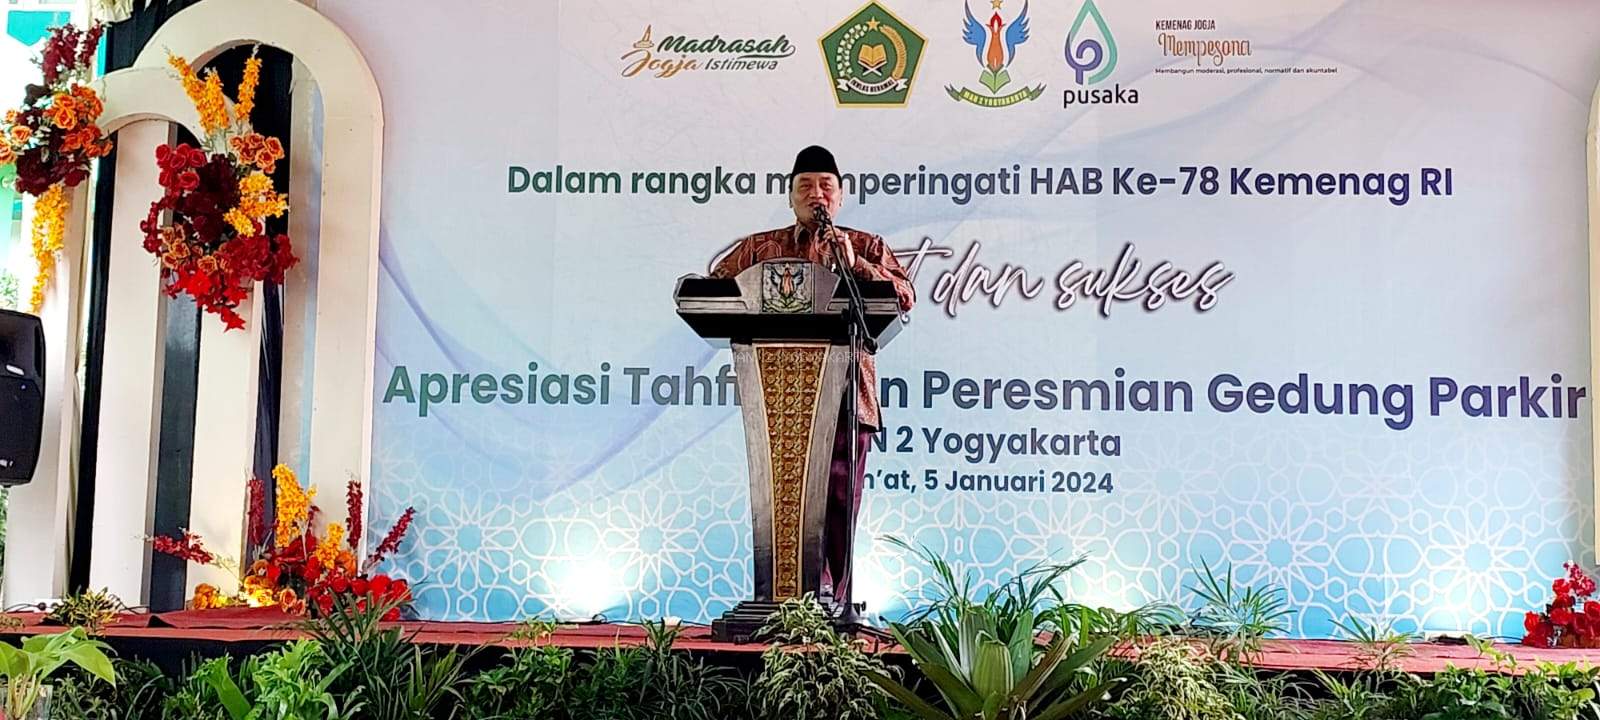 Kakanwil Kementerian Agama Daerah Istimewa Yogyakarta Berikan Apresiasi kepada 182 Hafizh Siswa MAN 2 Yogyakarta